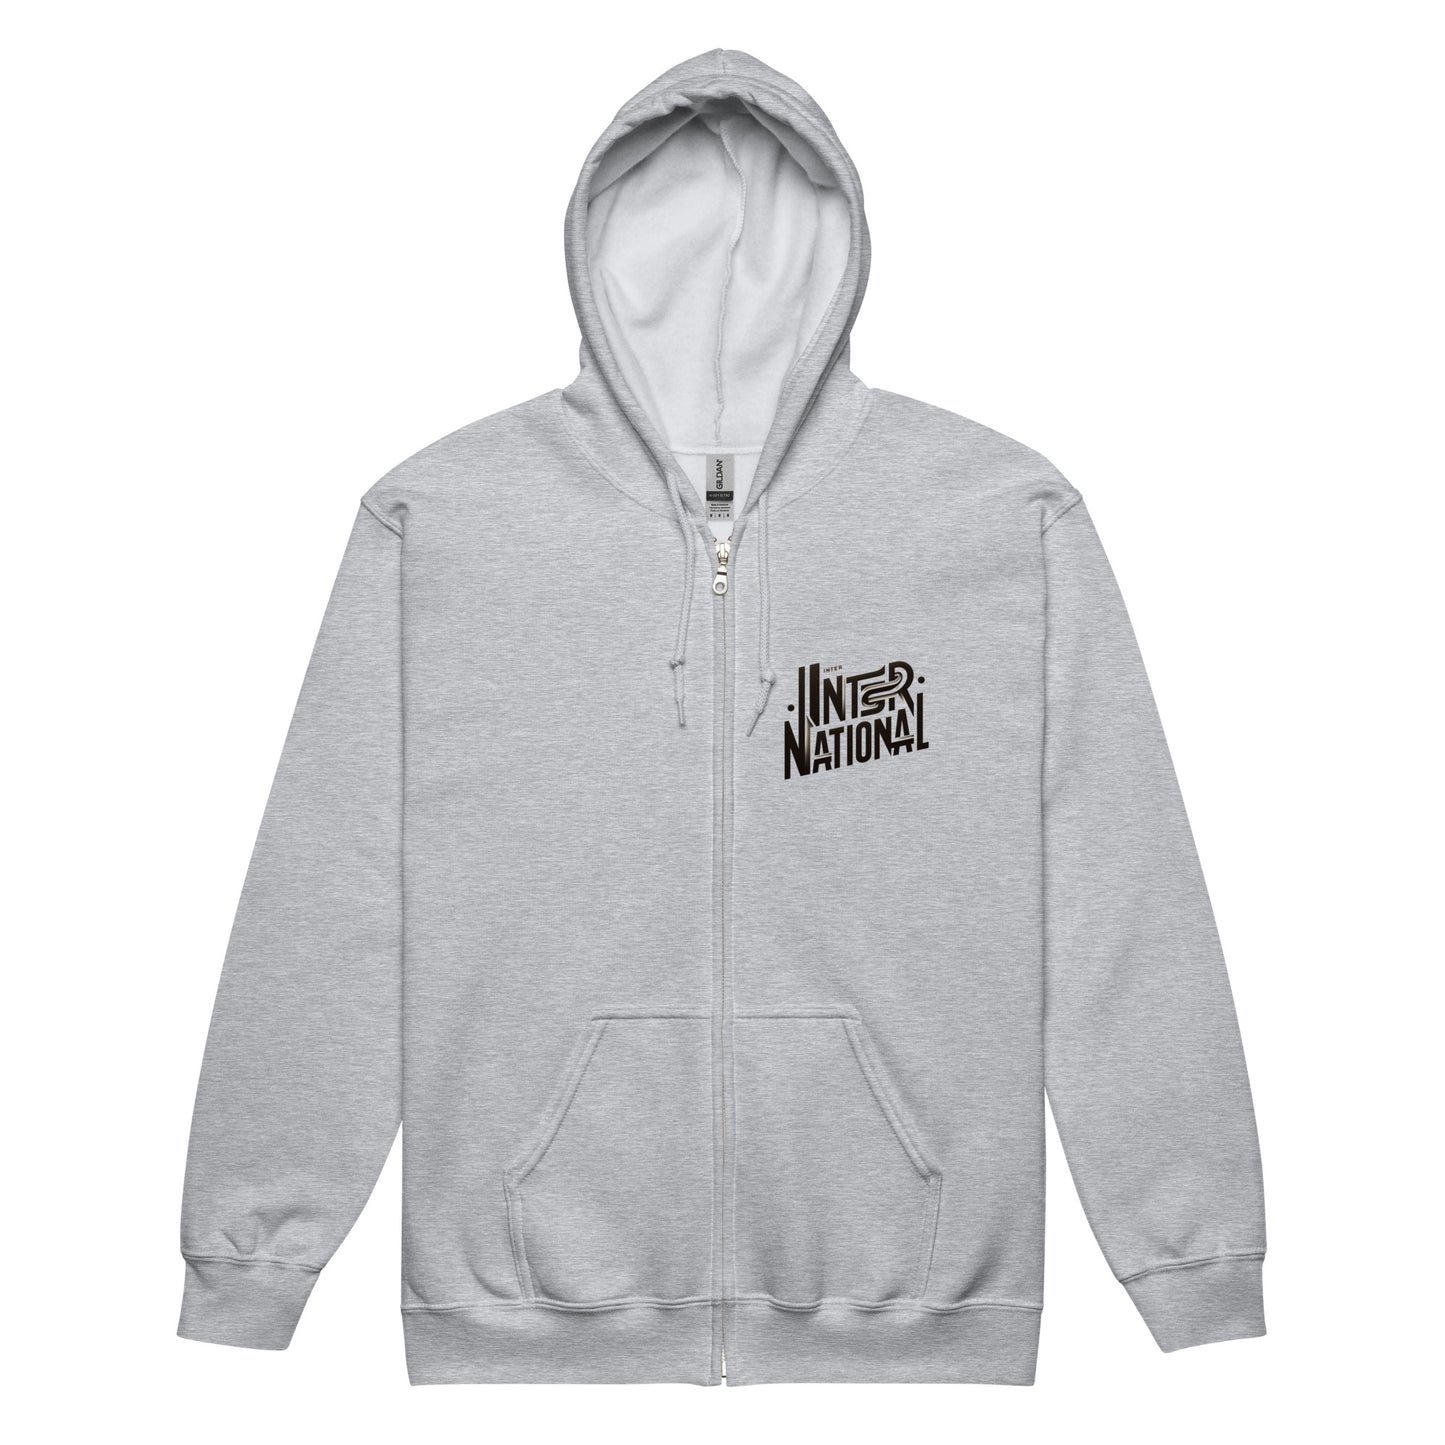 International - Unisex heavy blend zip hoodie